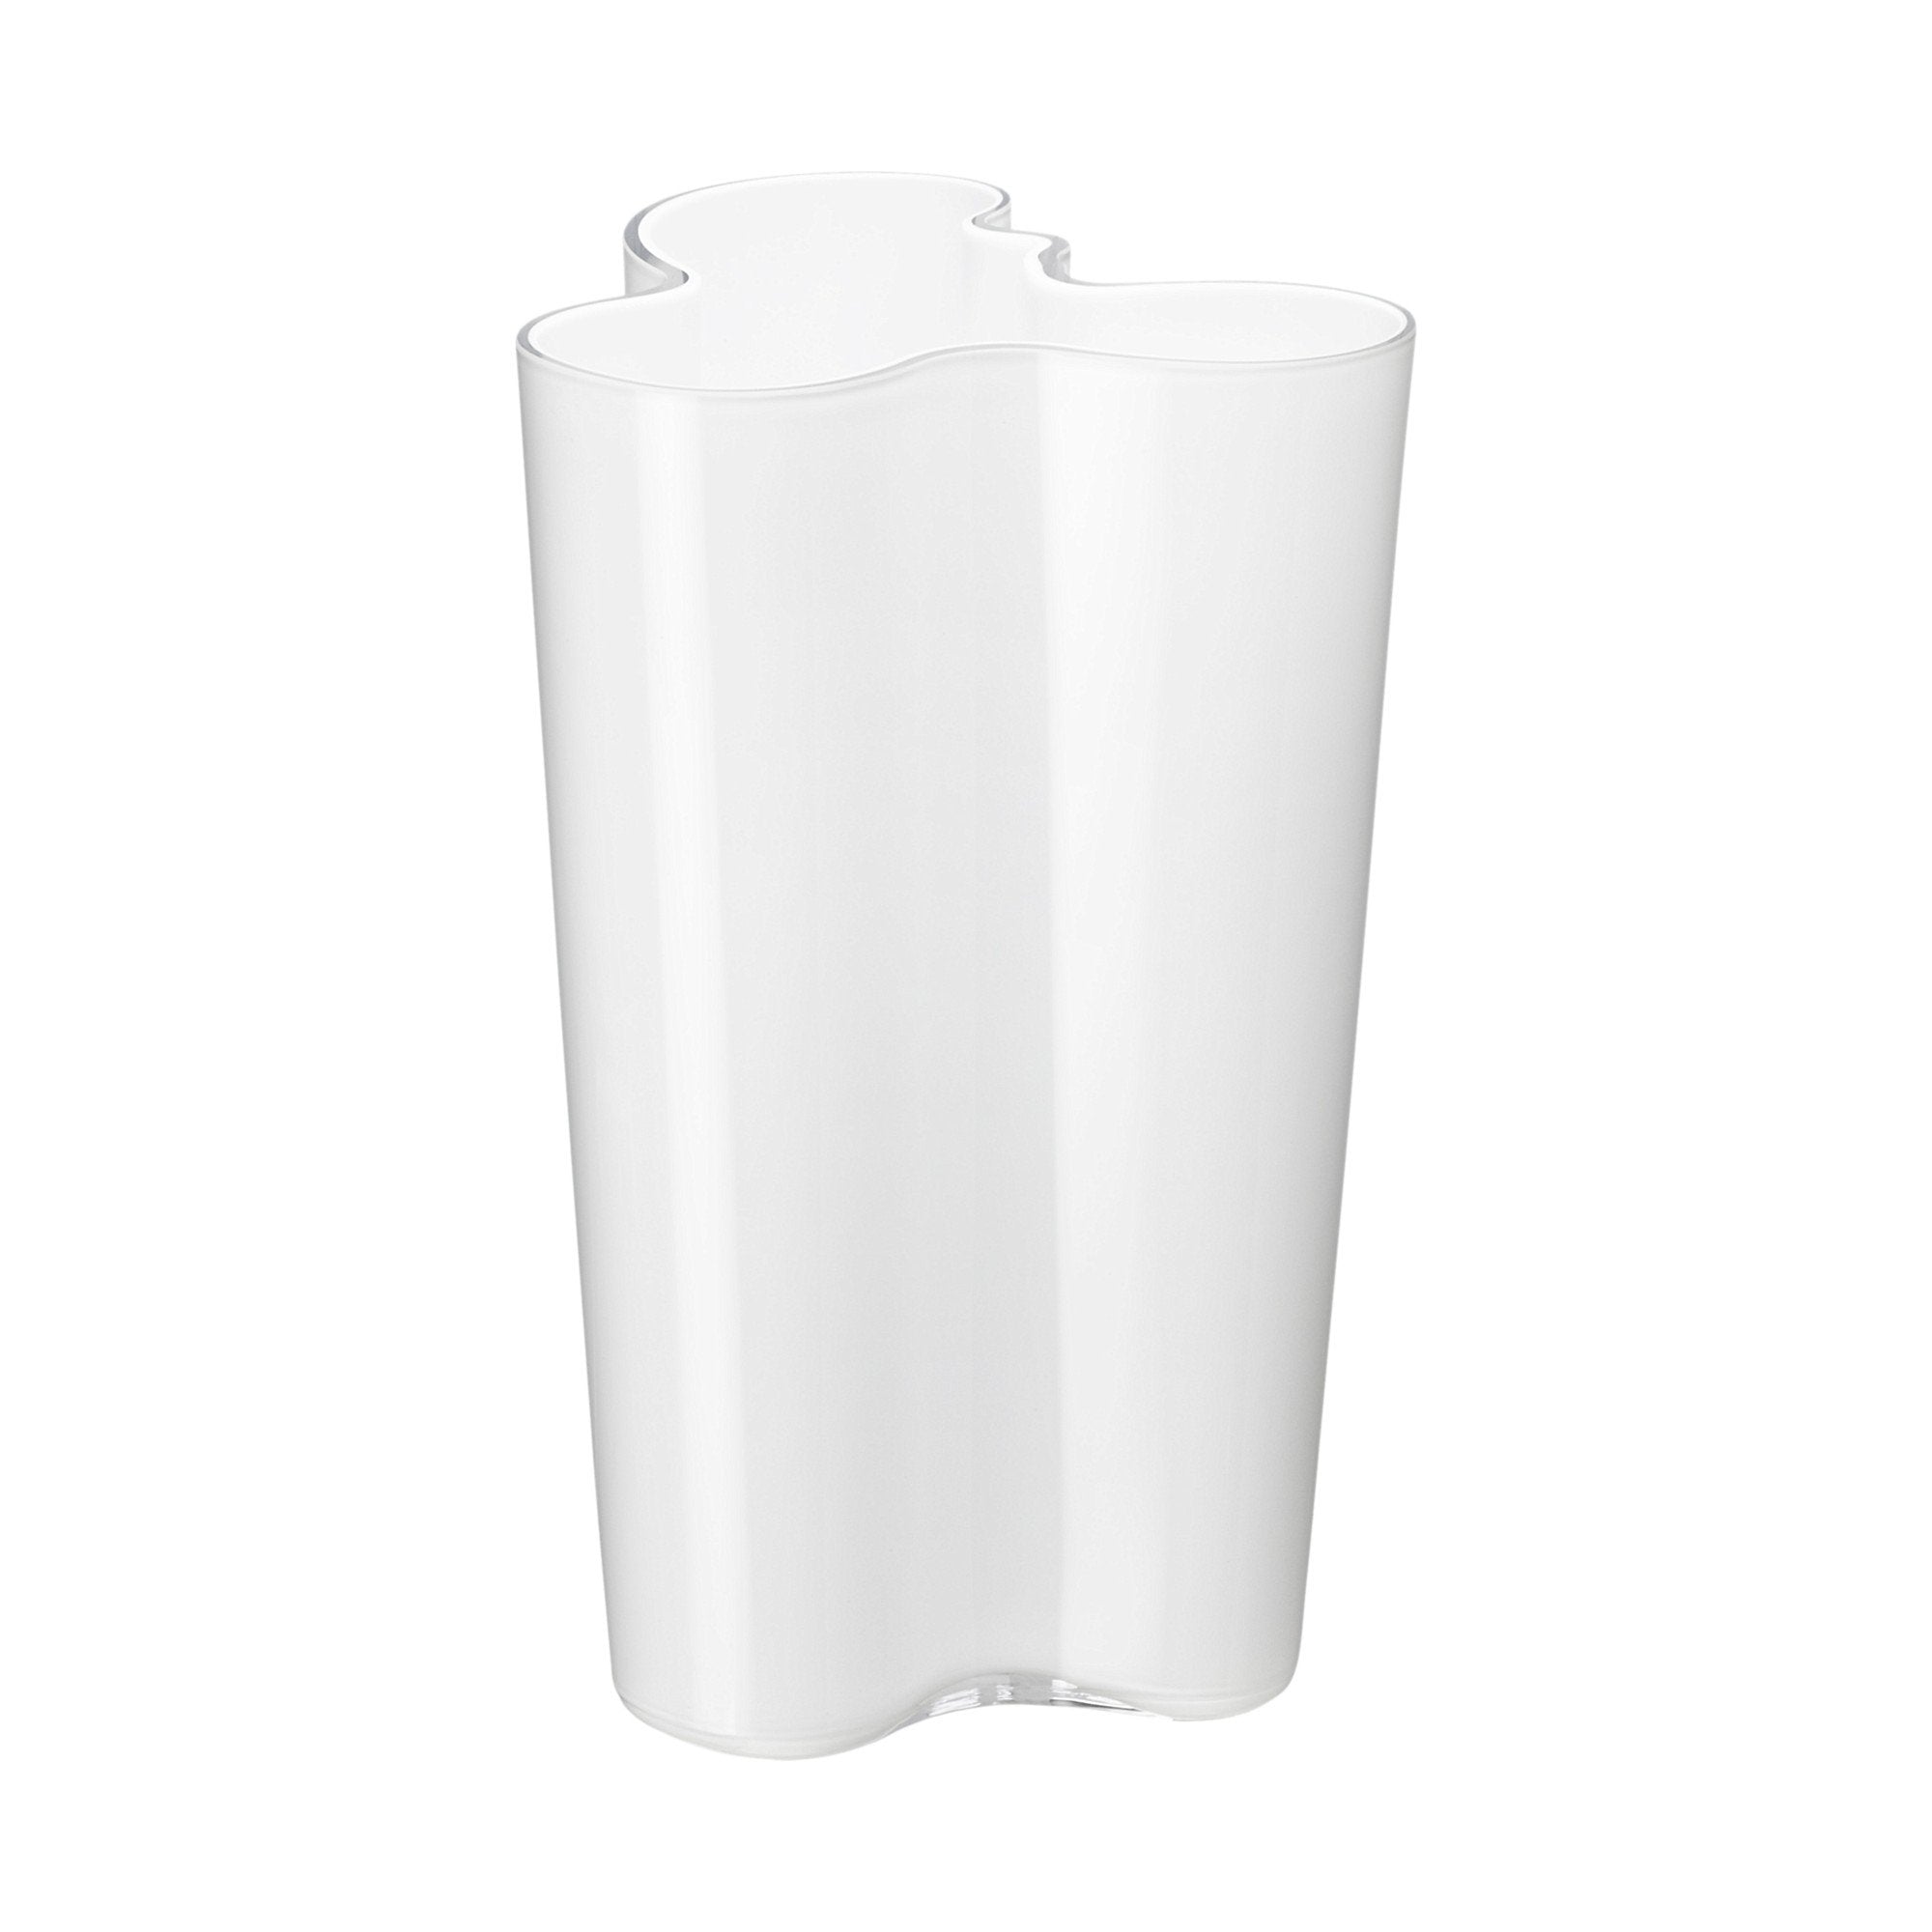 Iittala alvar aalto vaso branco, 25,1 cm